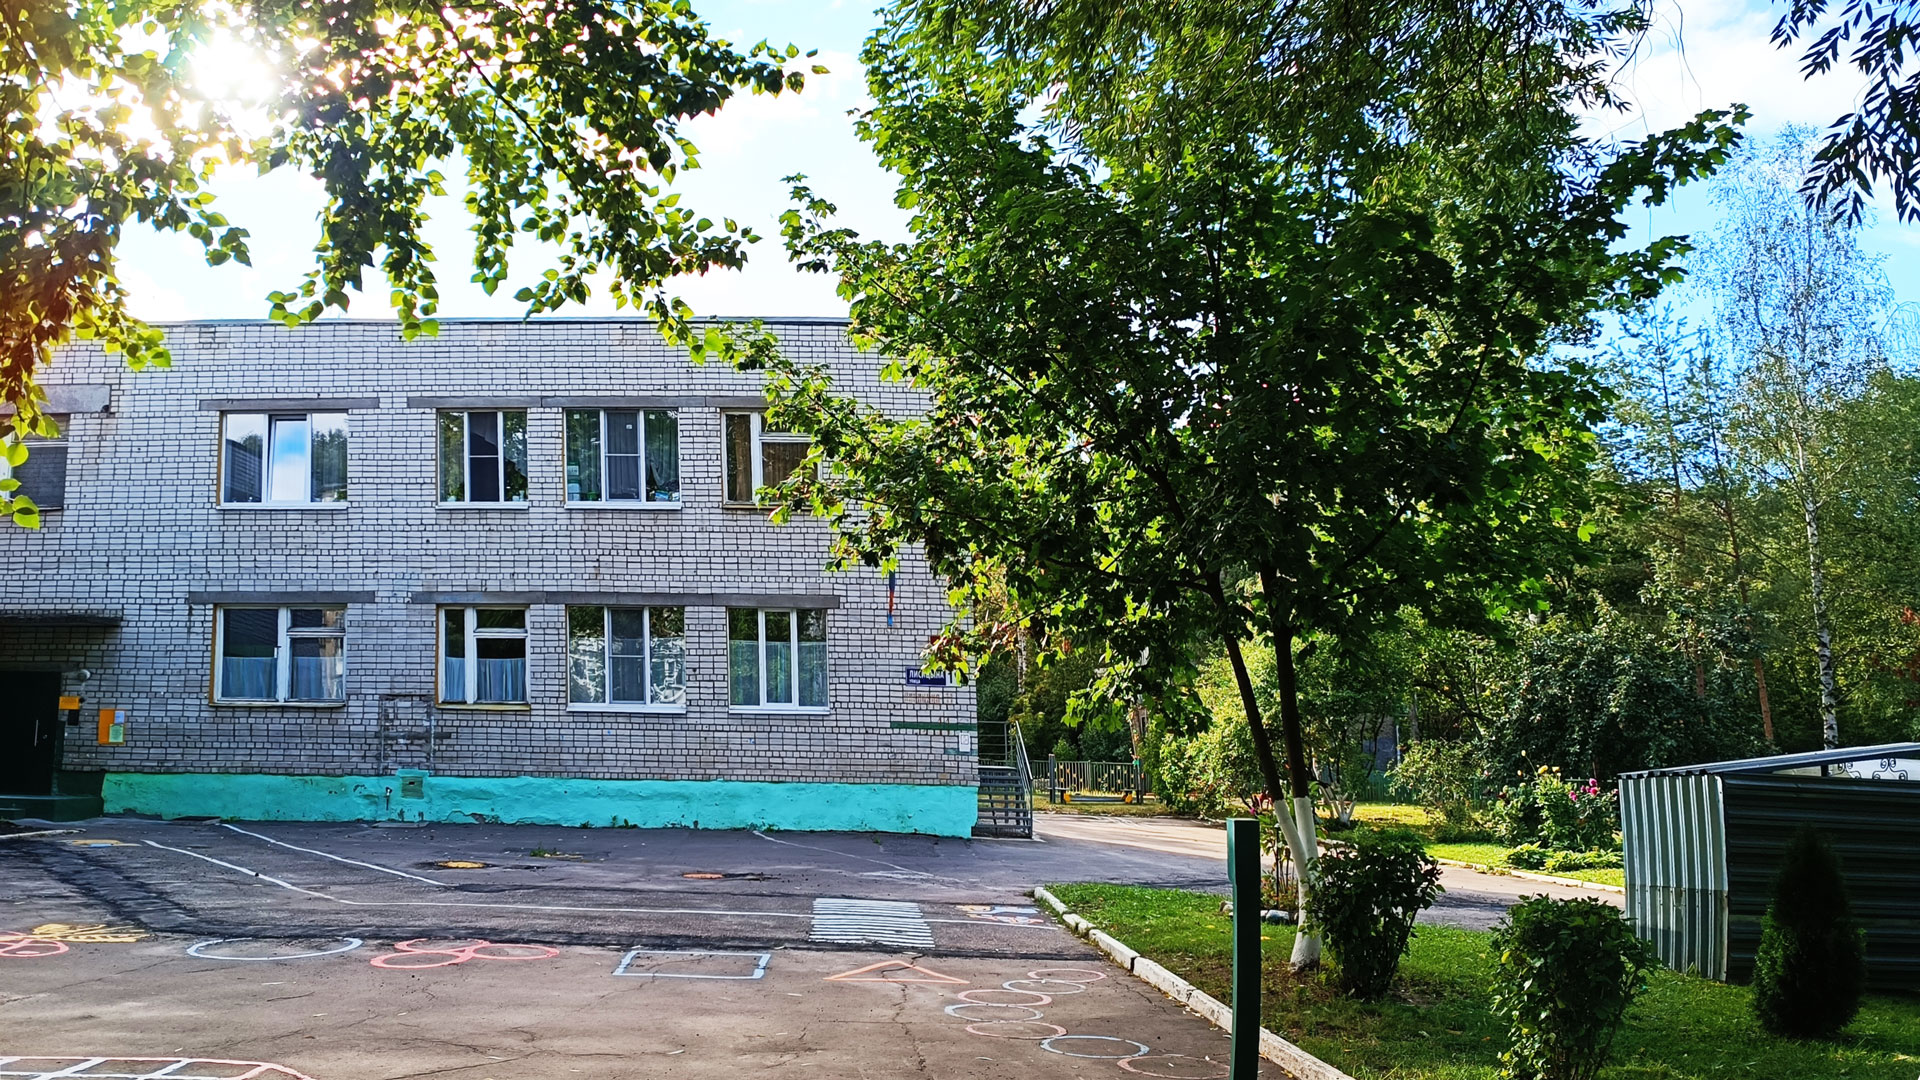 Детский сад 236 Ярославль: общий вид здания.